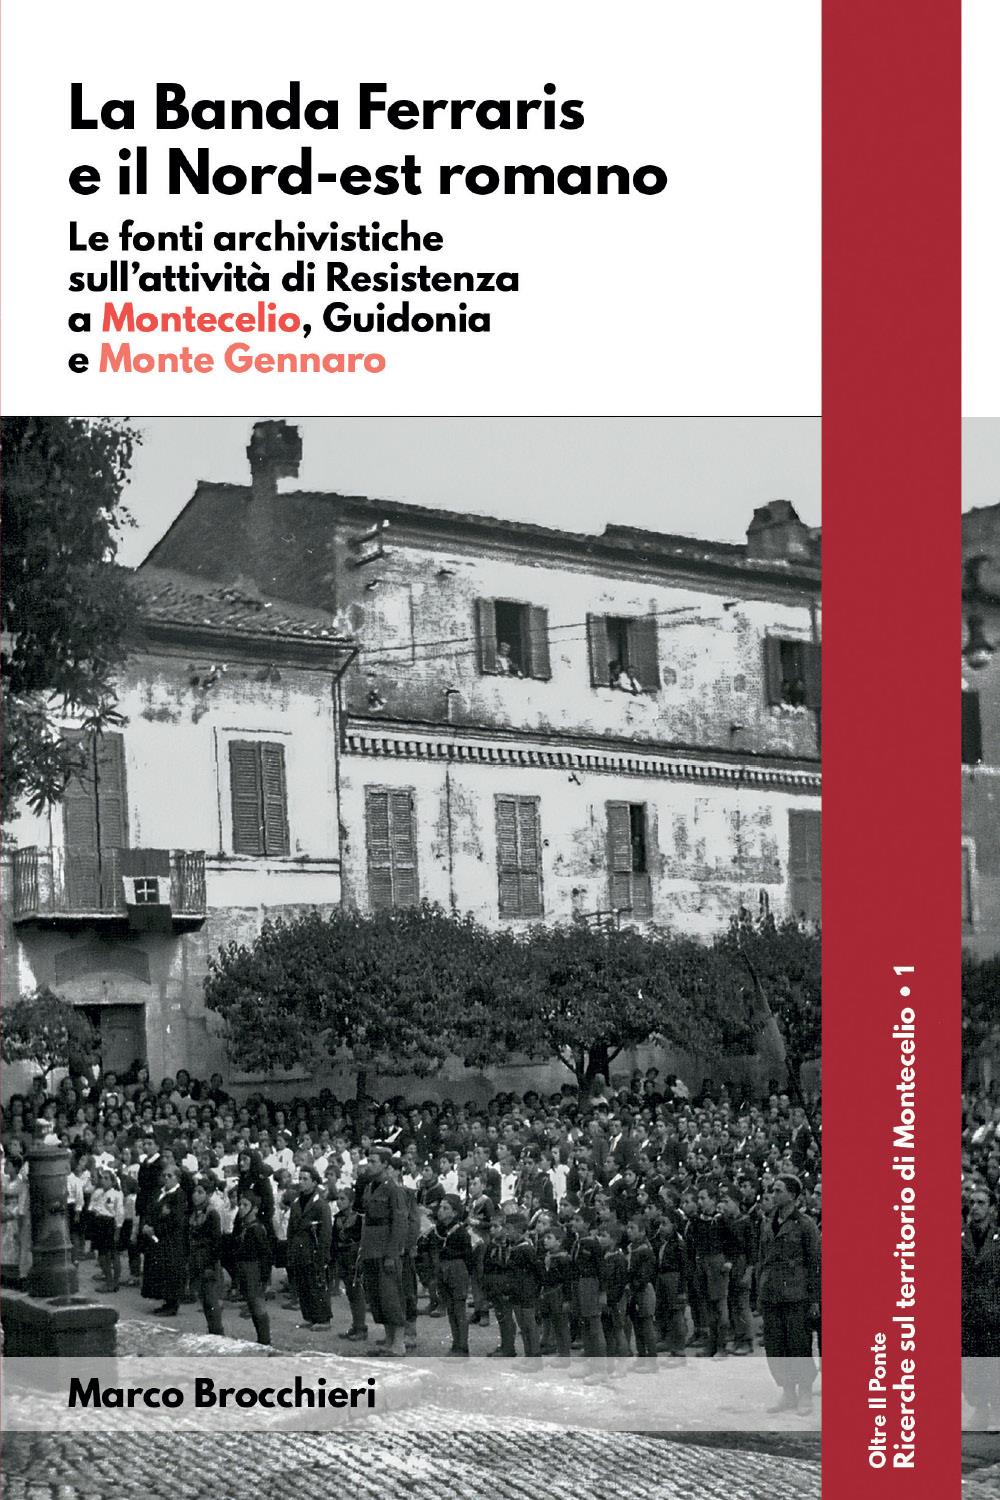 La Banda Ferraris e il Nord-est romano. Le fonti archivistiche sull'attività di Resistenza a Montecelio, Guidonia e Monte Gennaro